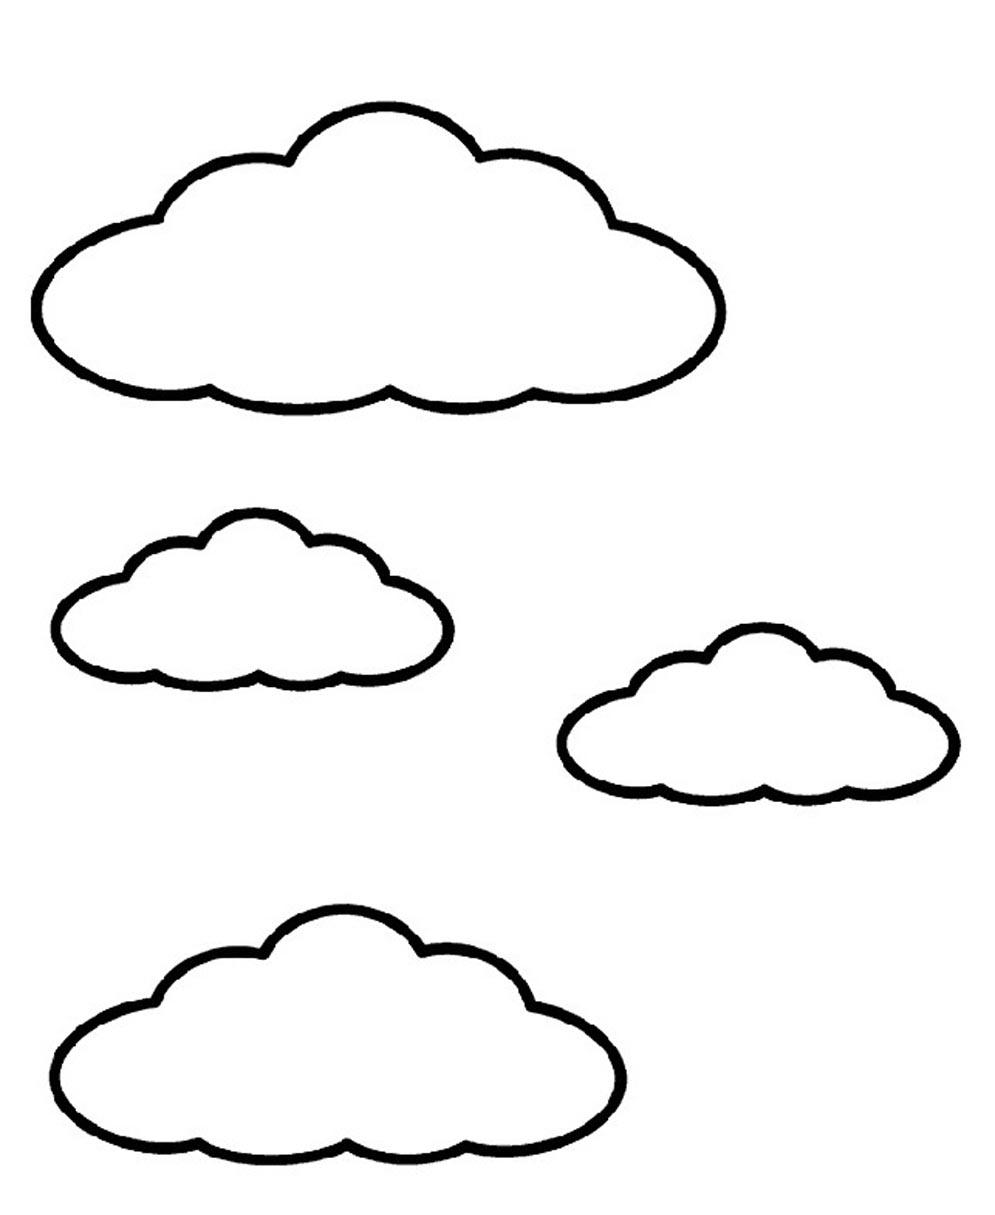 Cloud coloring #12, Download drawings